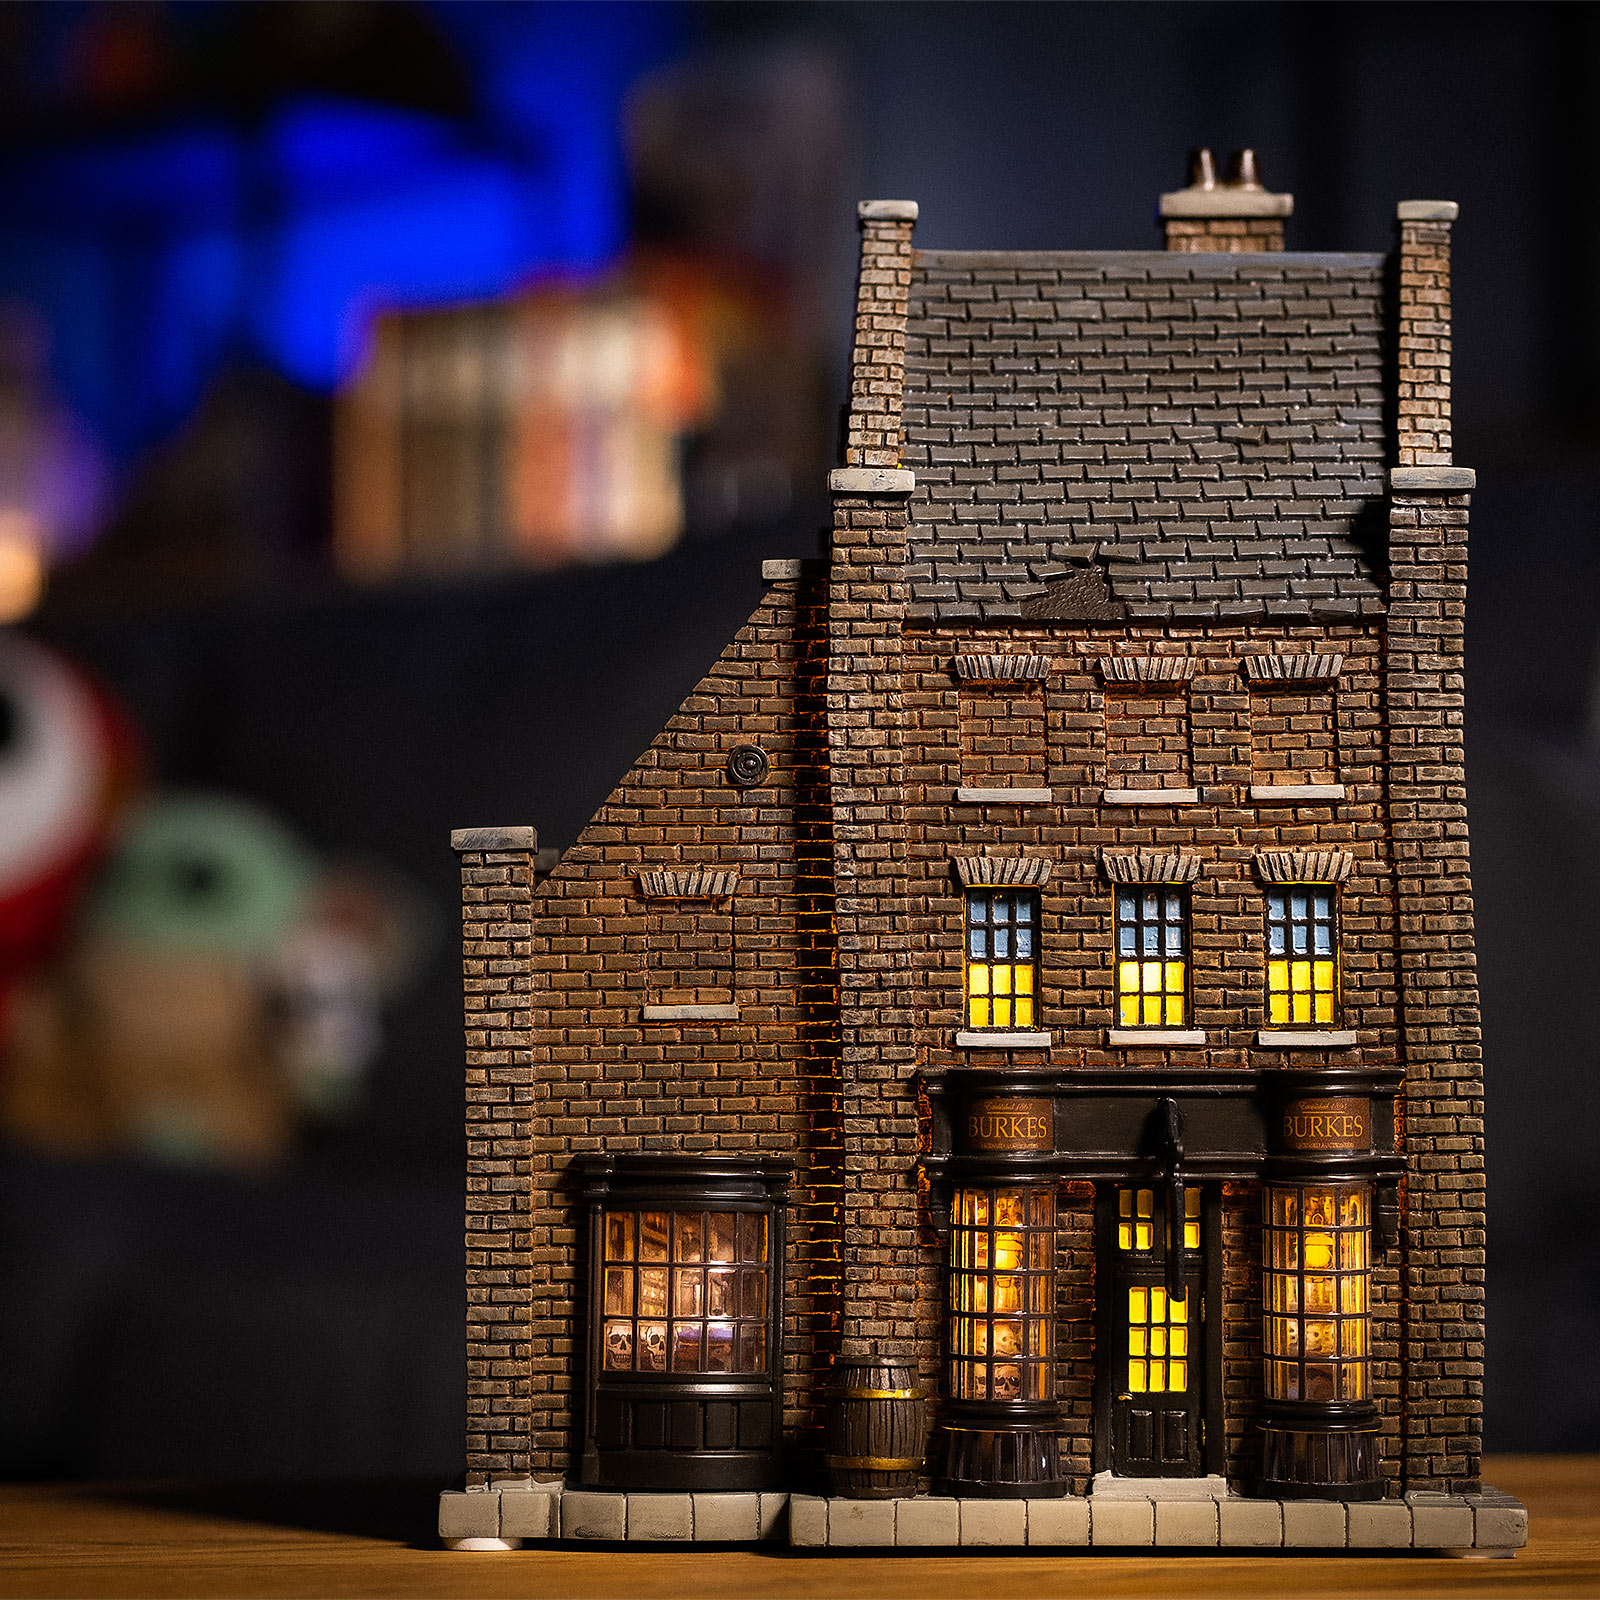 Borgin & Burkes Shop Miniatuur Replica met Verlichting - Harry Potter